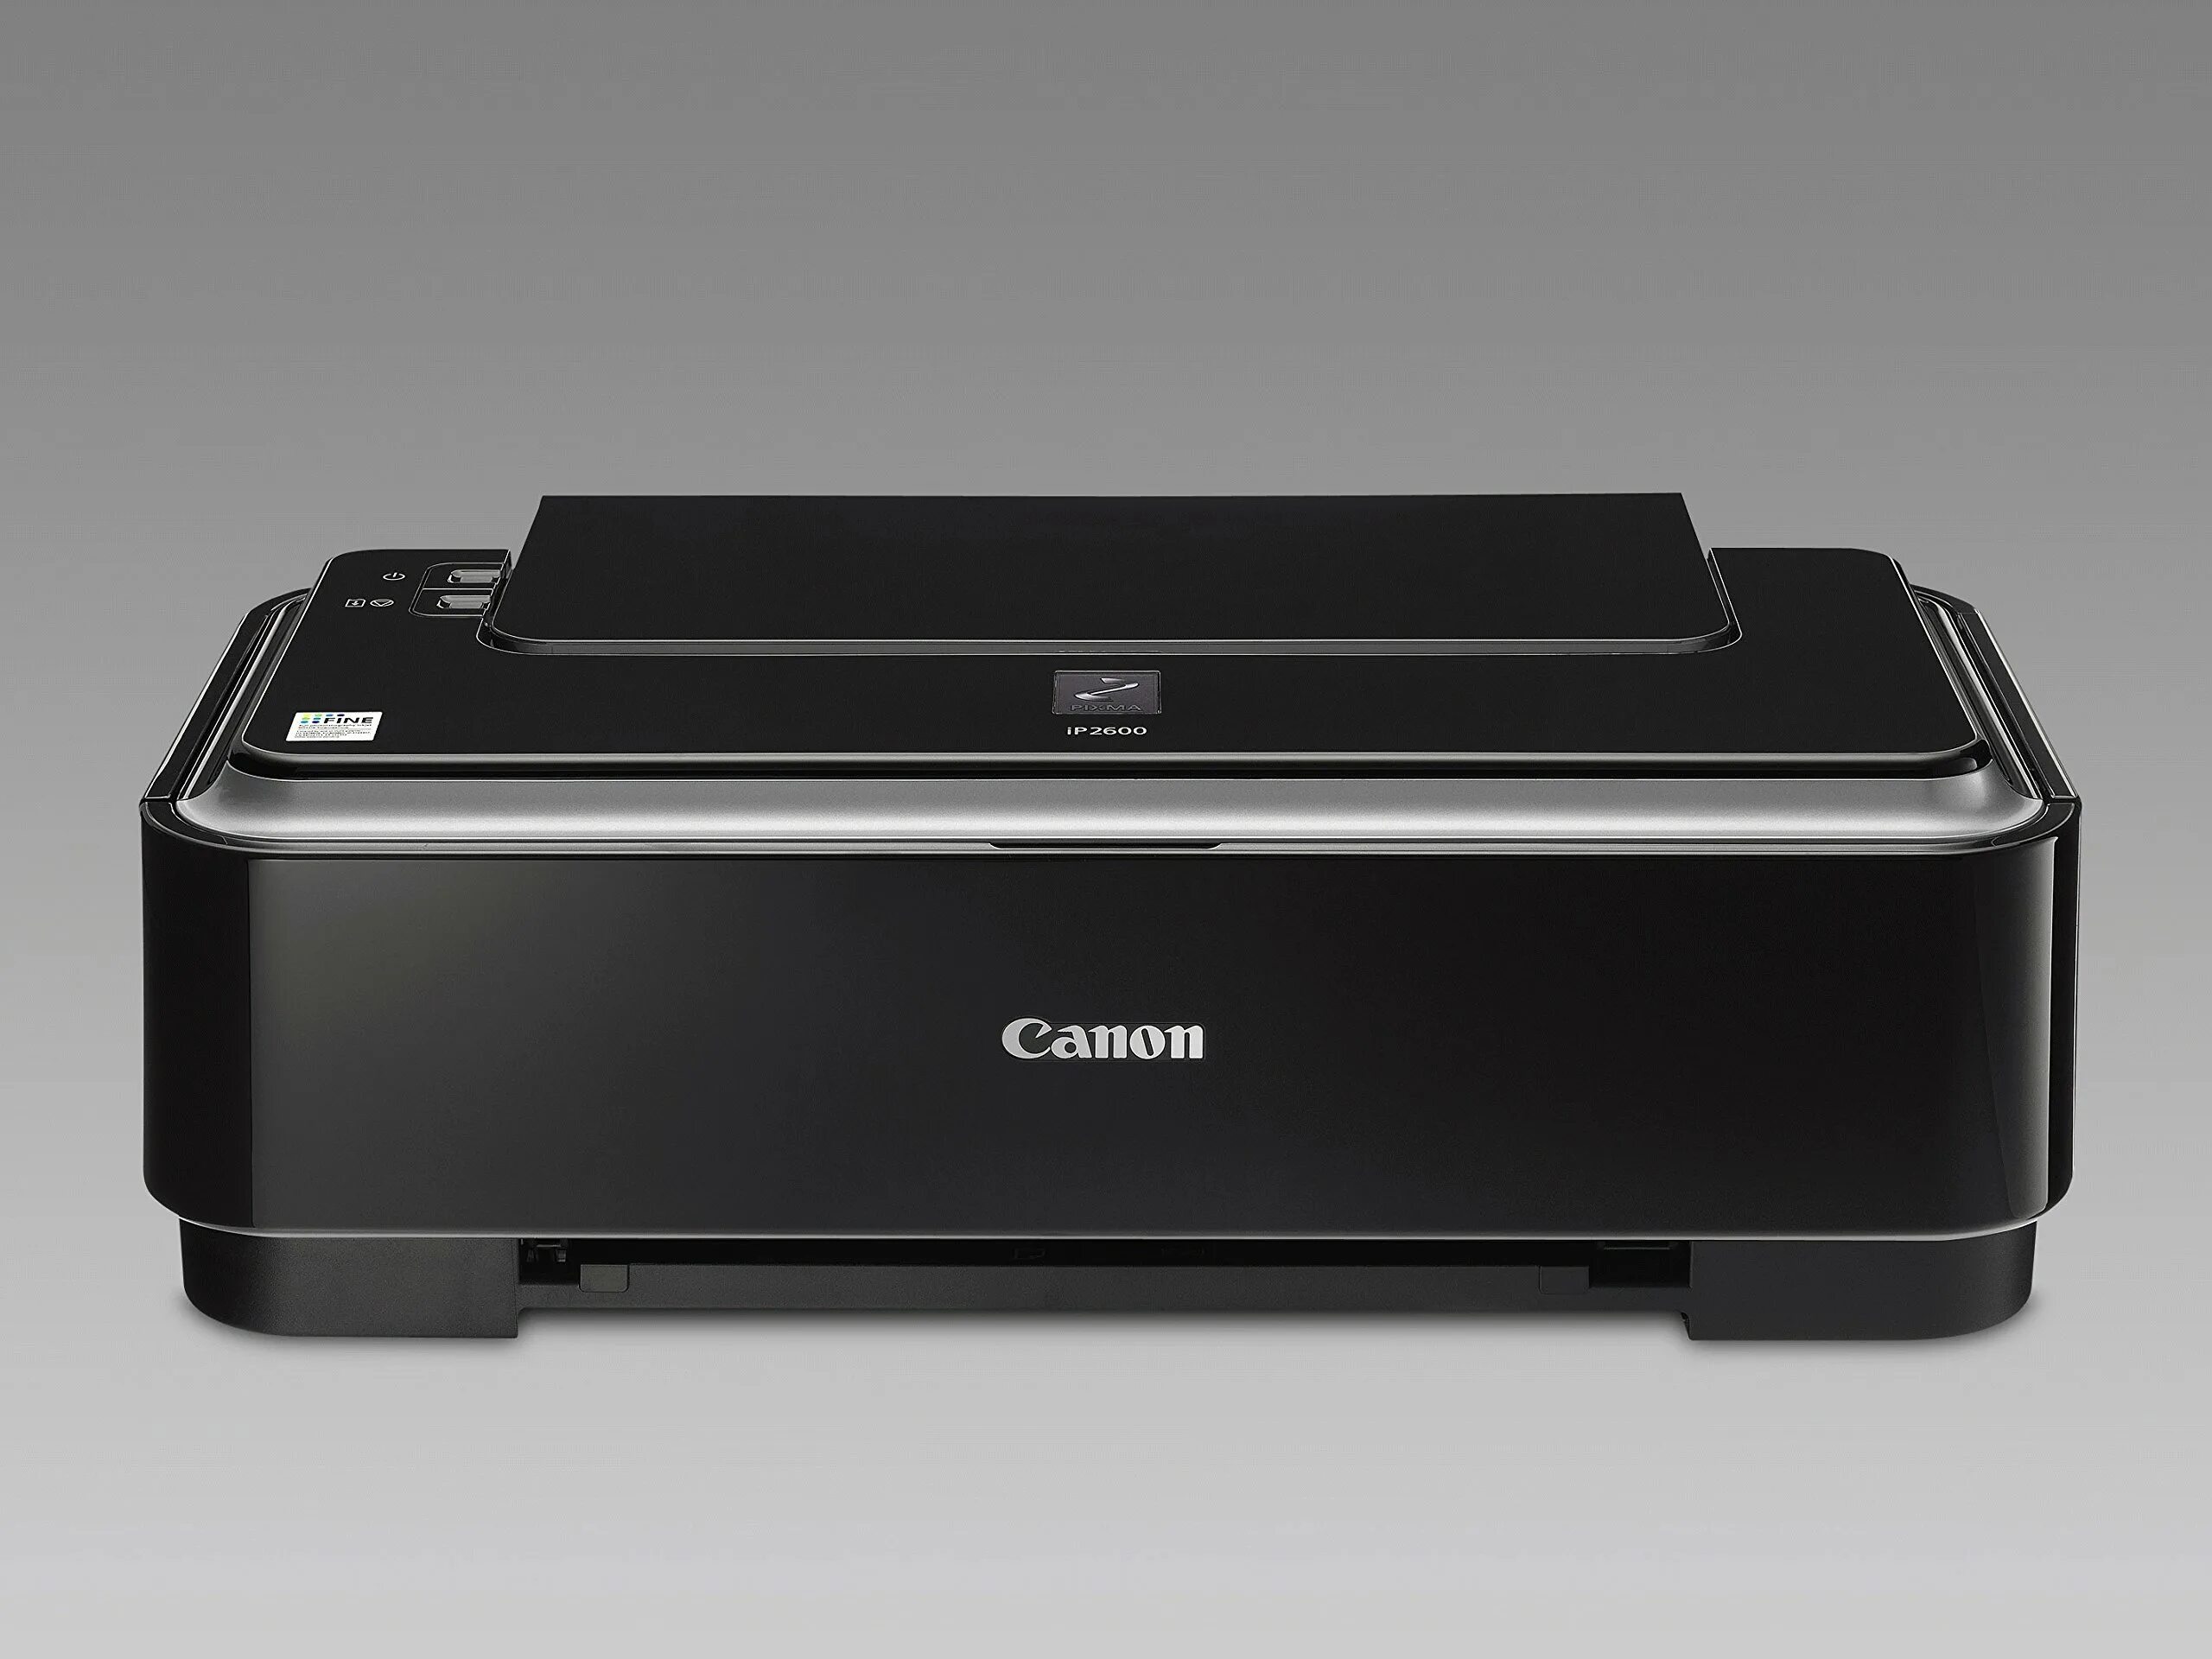 Установка принтера canon. Принтер Canon PIXMA ip2600. Canon PIXMA 2600. Canon 2600 принтер. Принтер Canon PIXMA mp495.